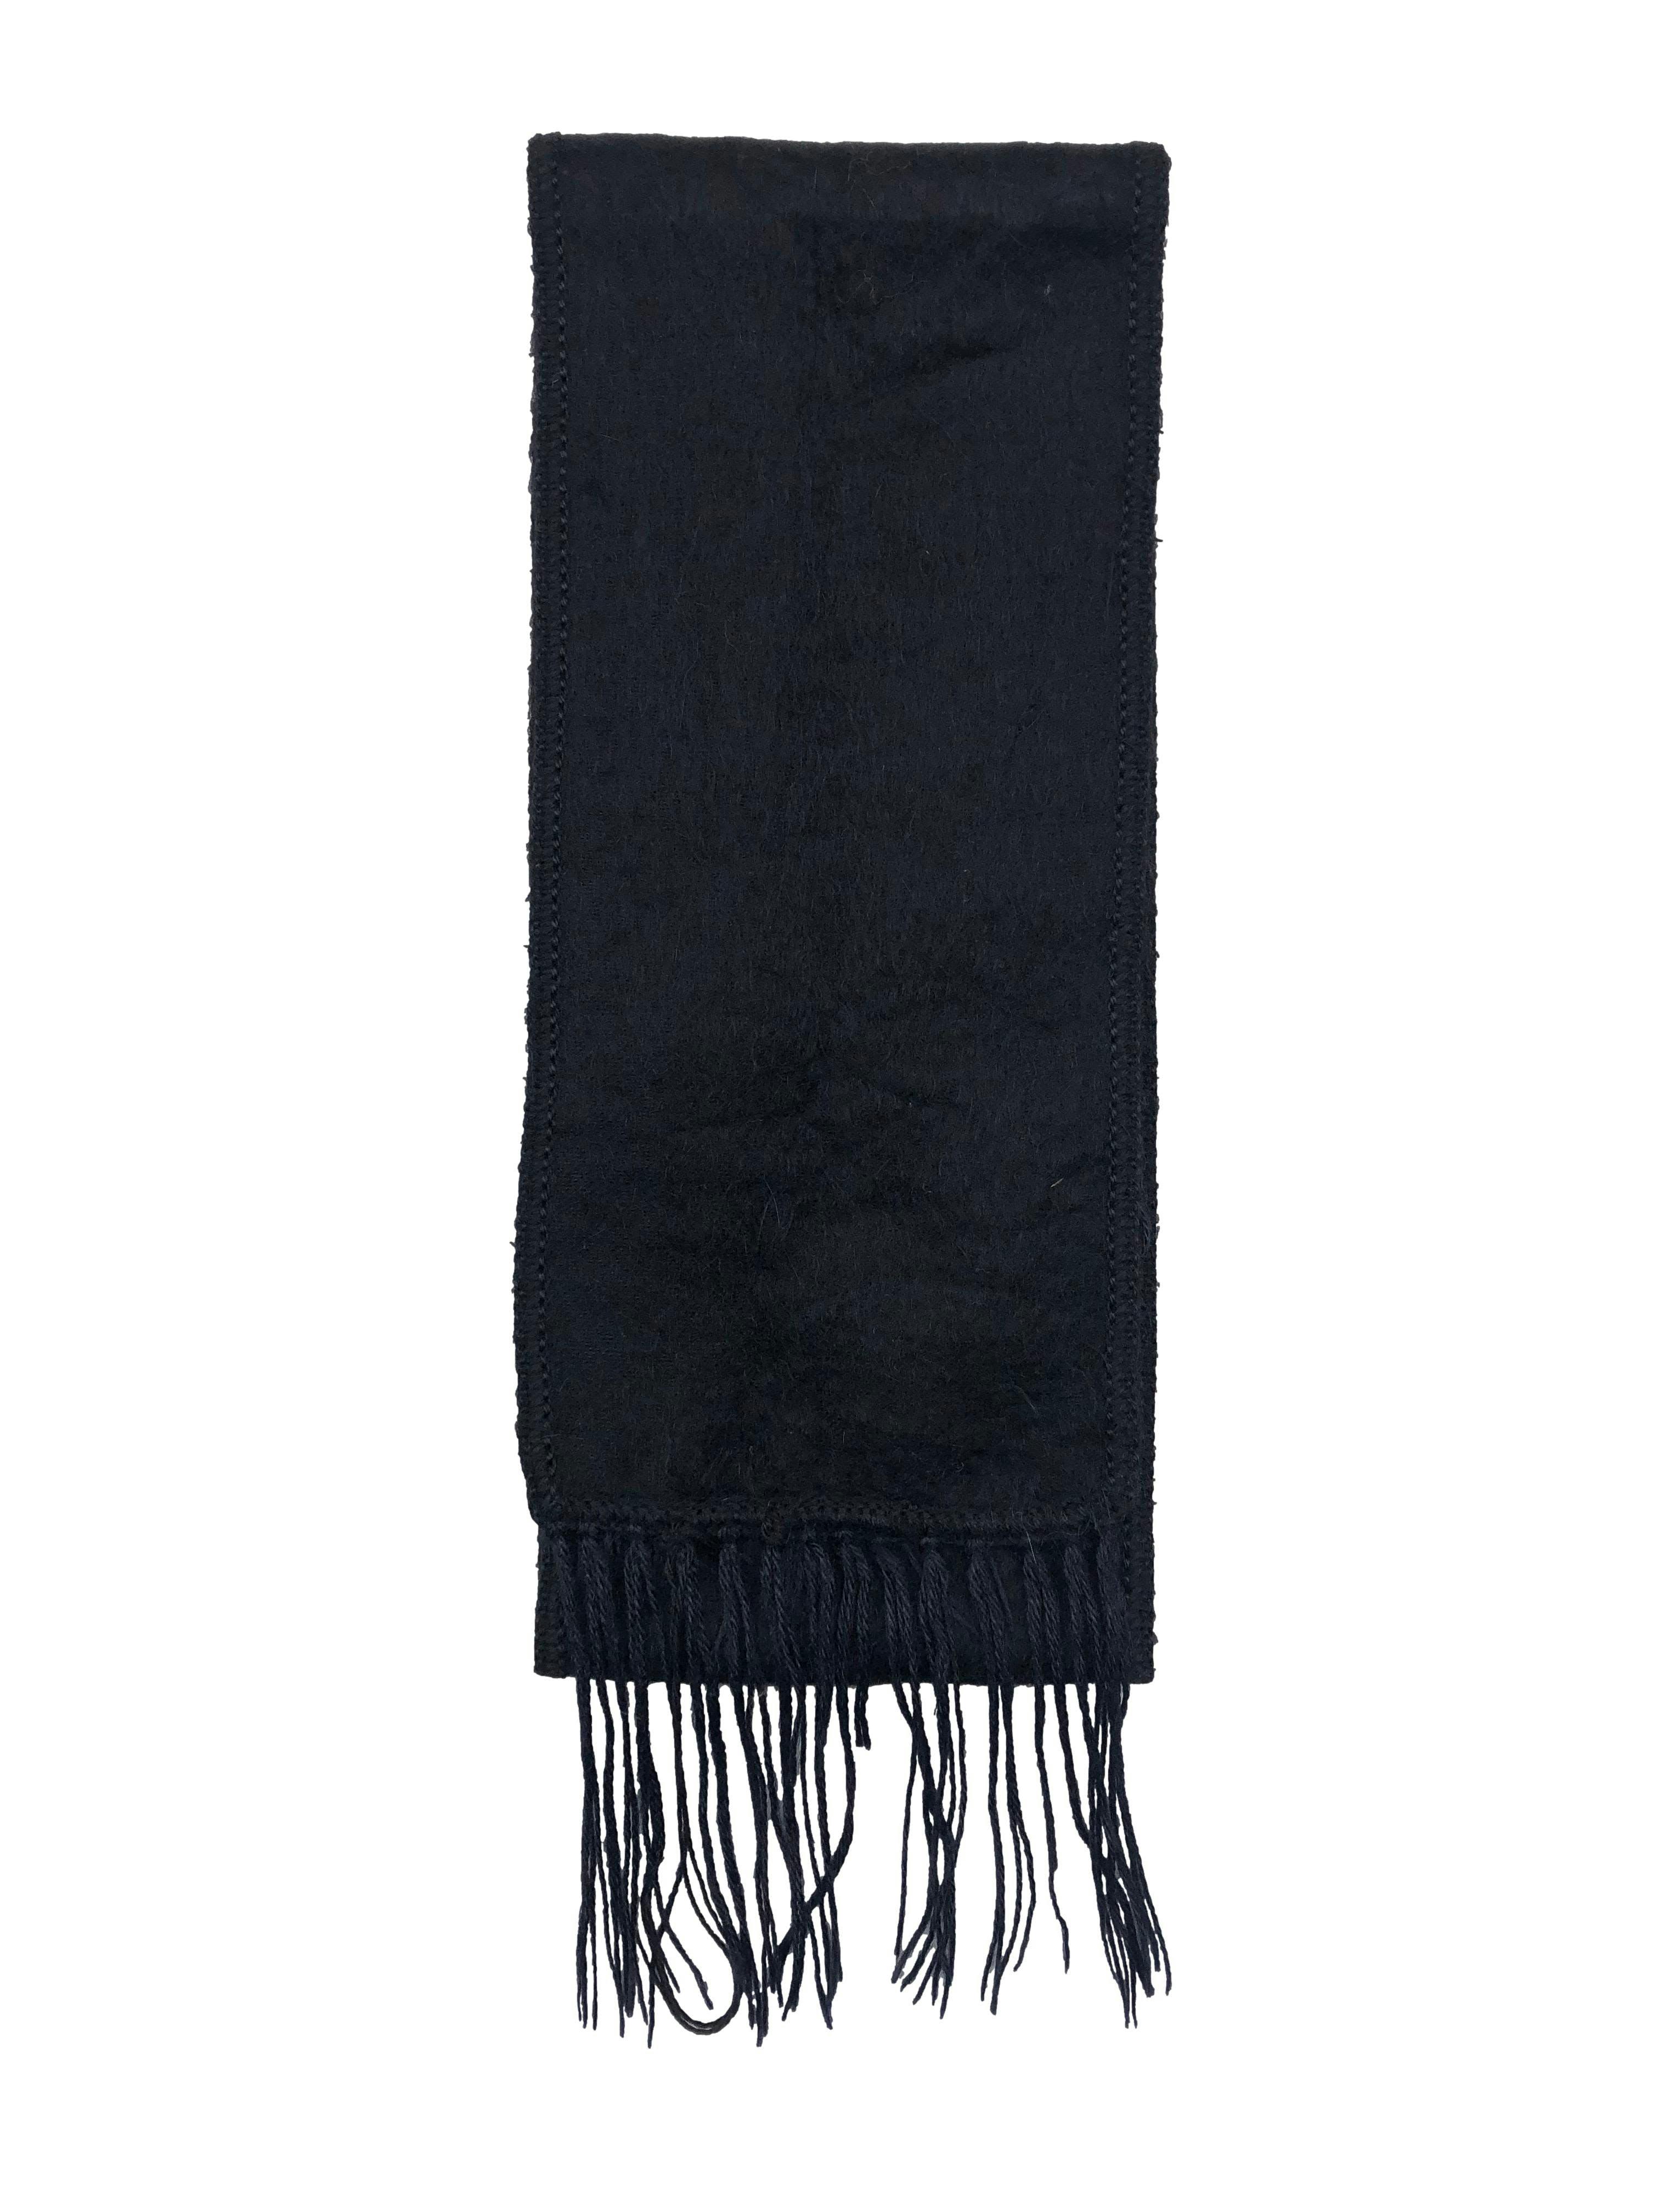 Chalina negra tipo lana con flecos. Medidas 160x15cm